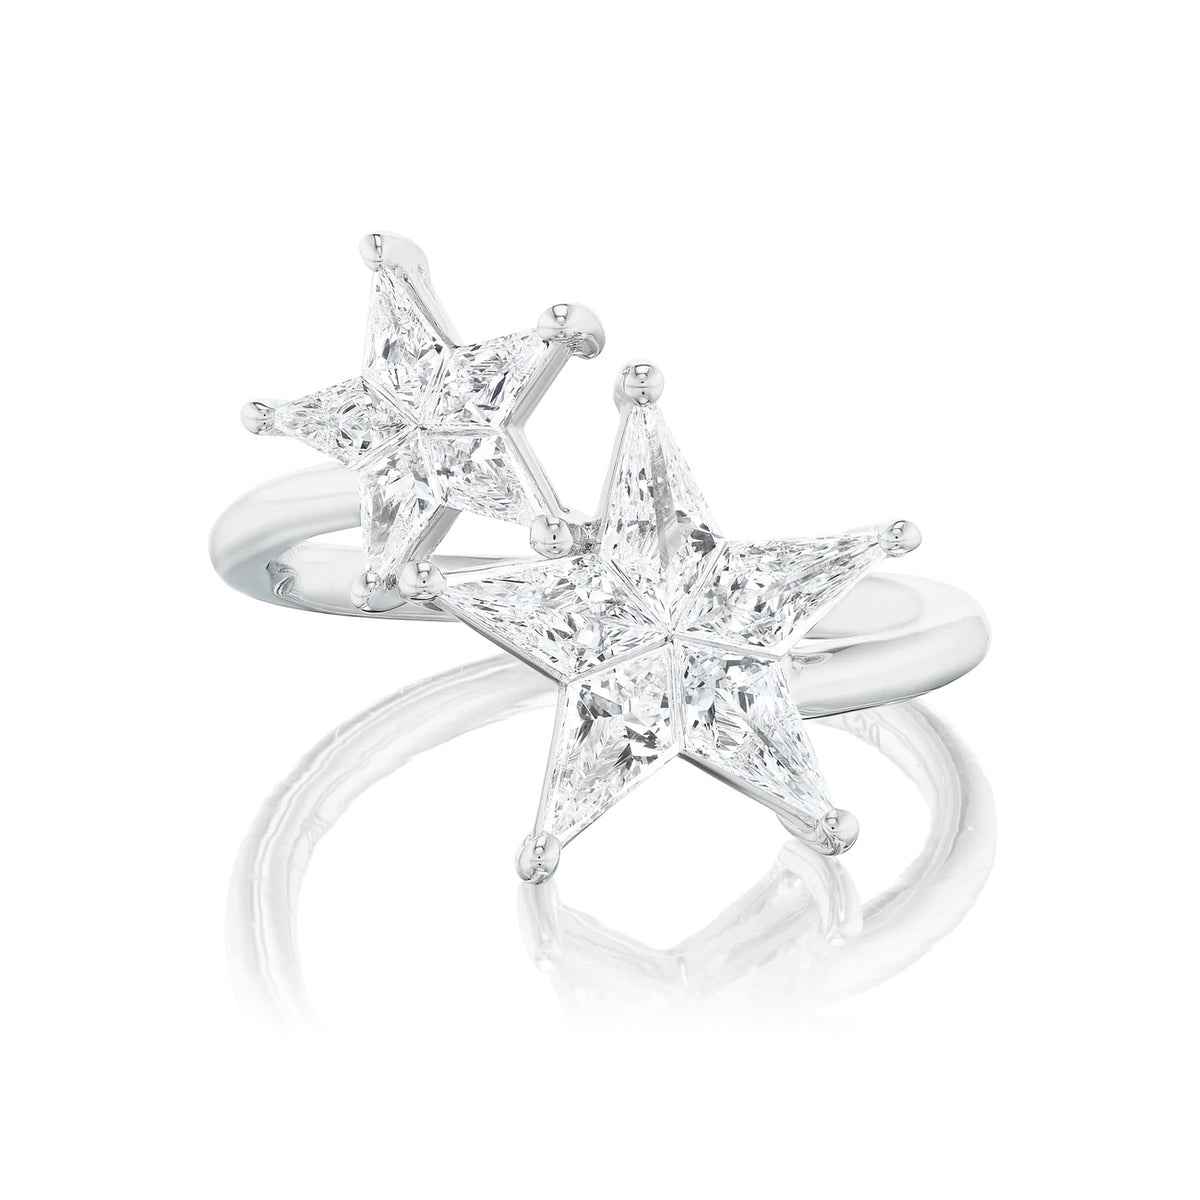 Celestial Shooting Stars Wraparound Ring with Kite Diamonds